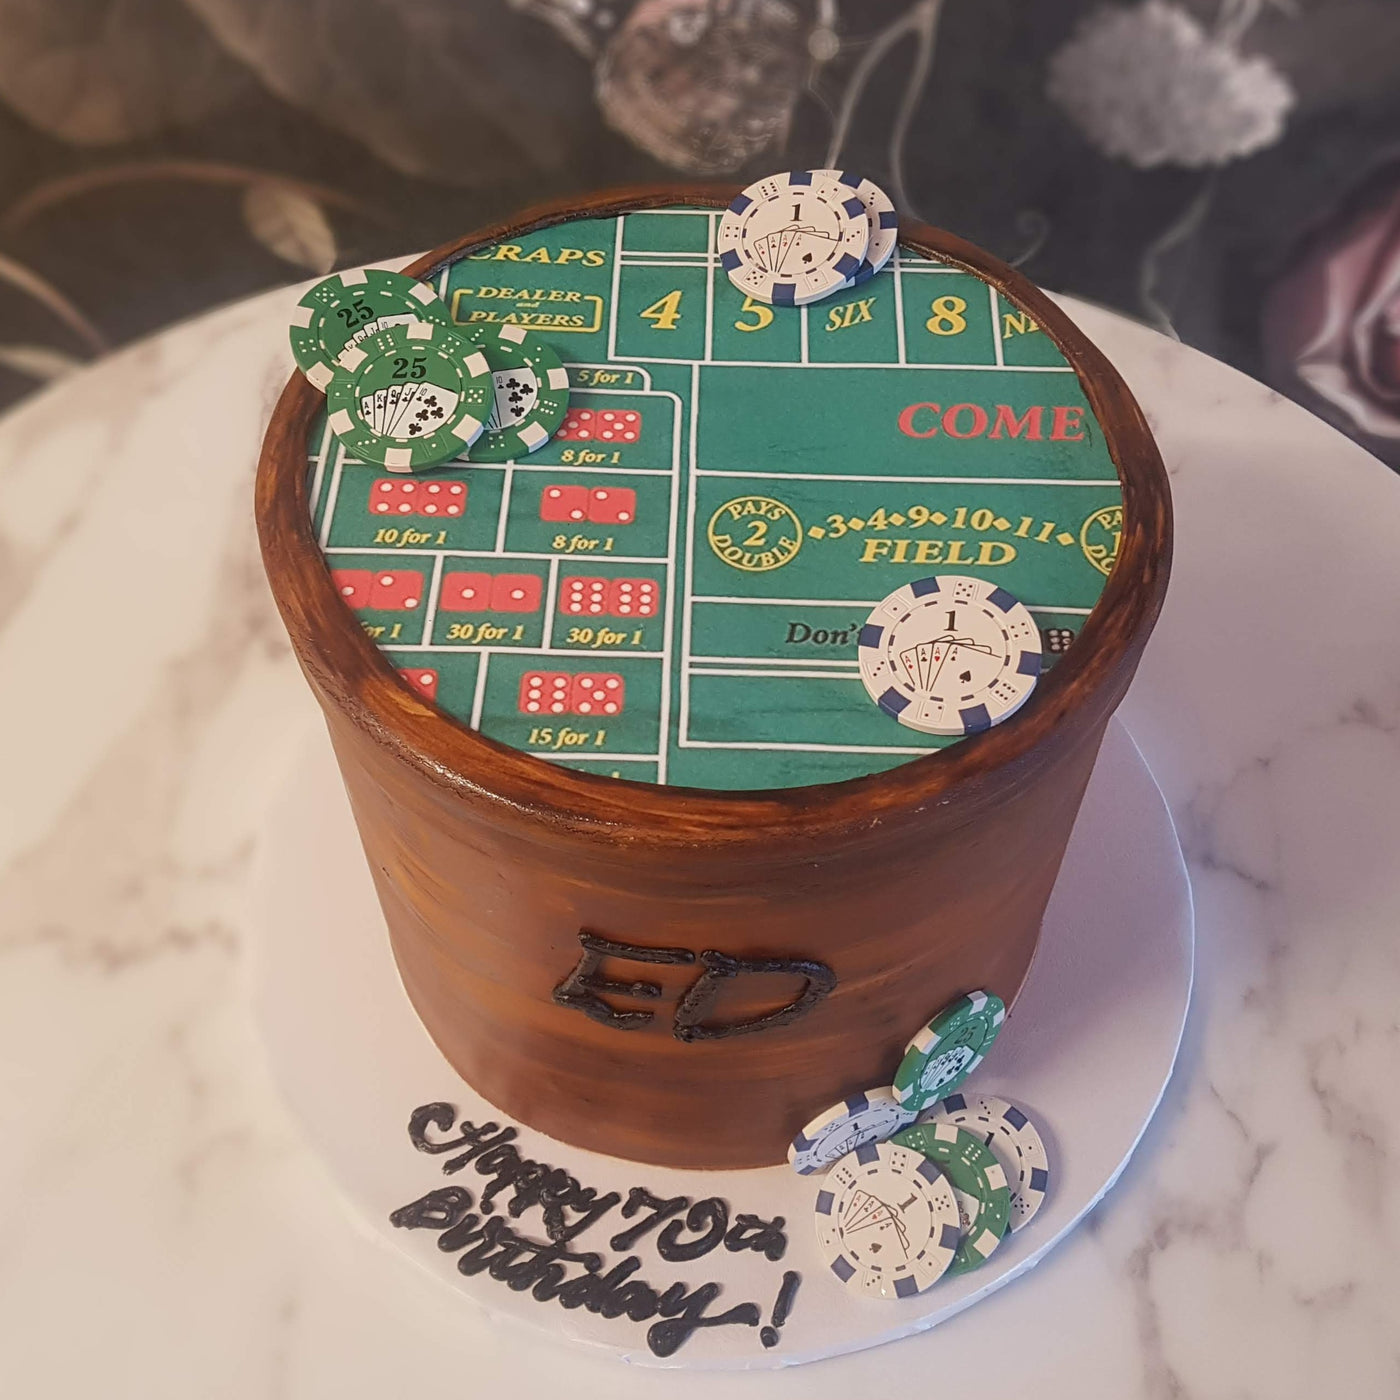 Craps Table Cake | Gambling Cake | Table Casino Cake